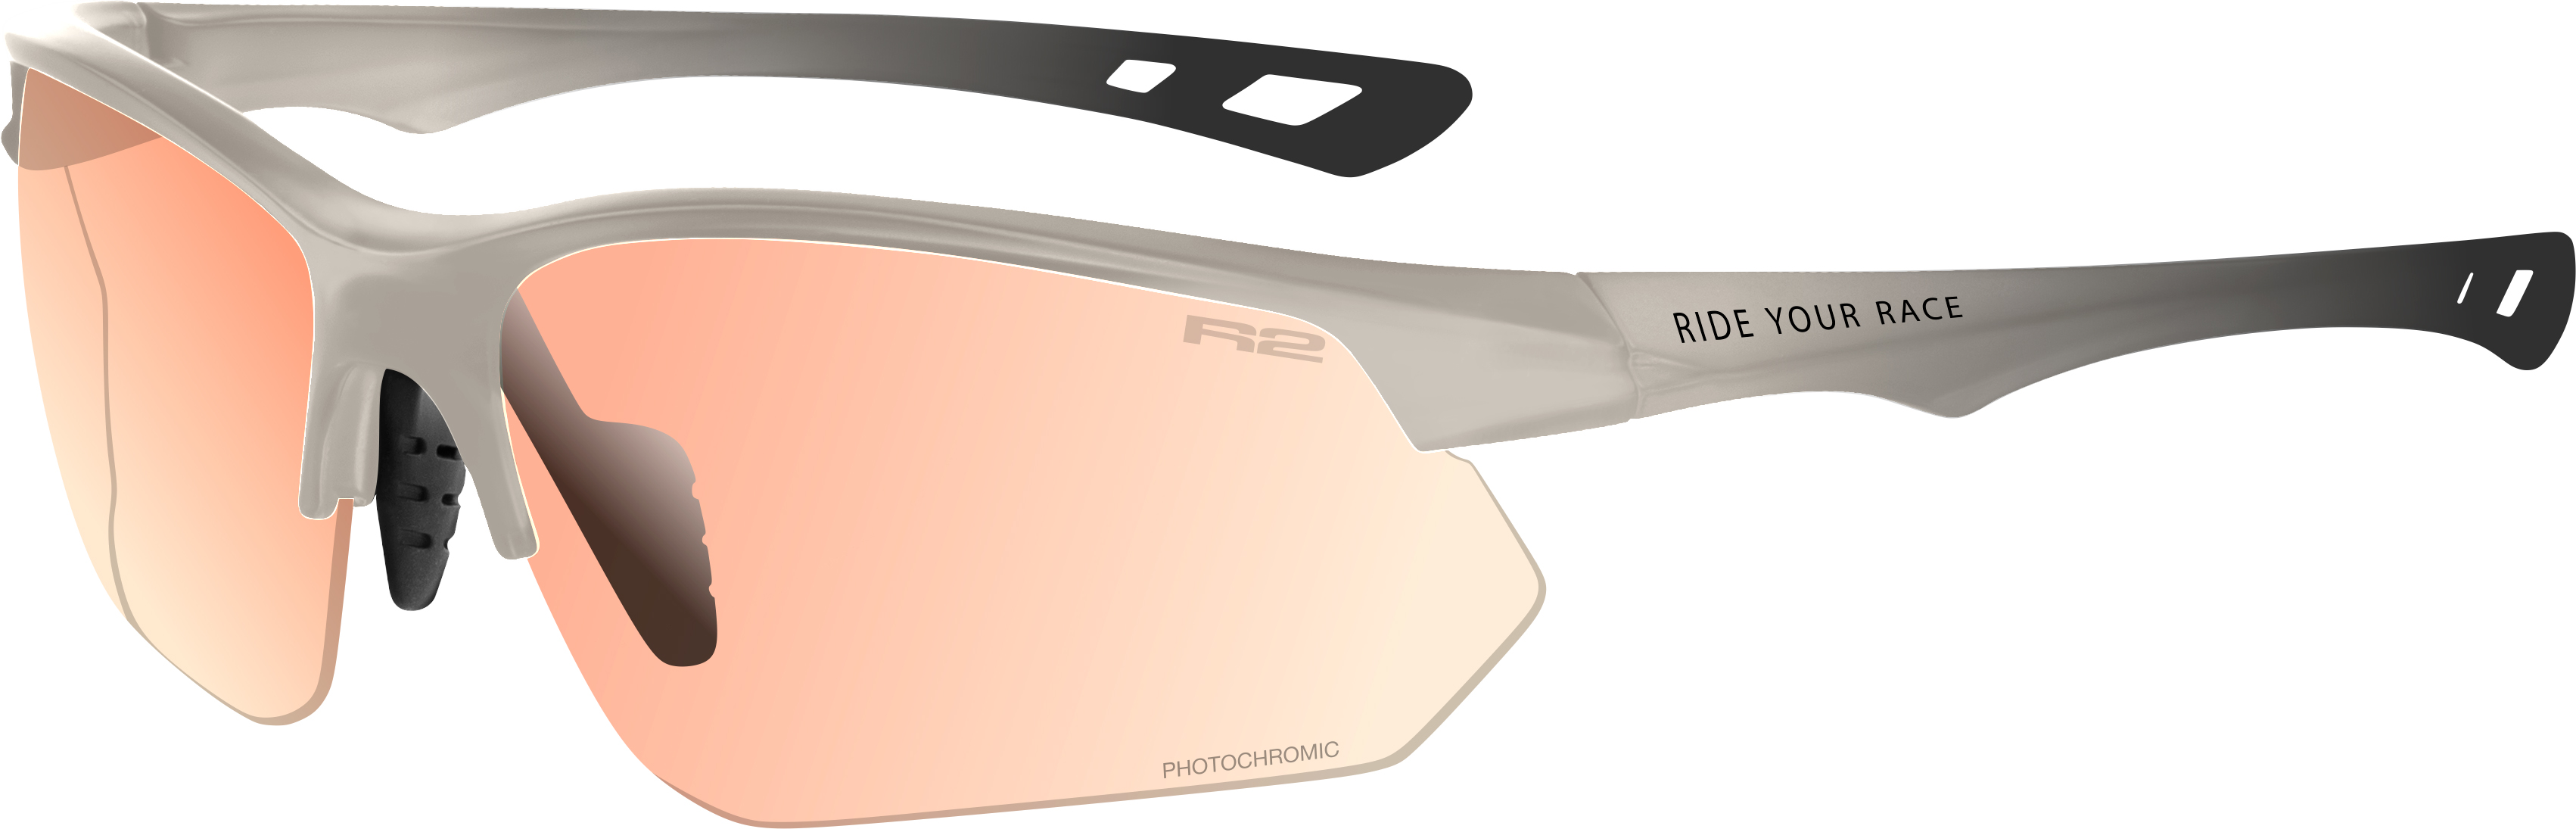 Sportovní sluneční brýle R2 DROP AT099M - Standard